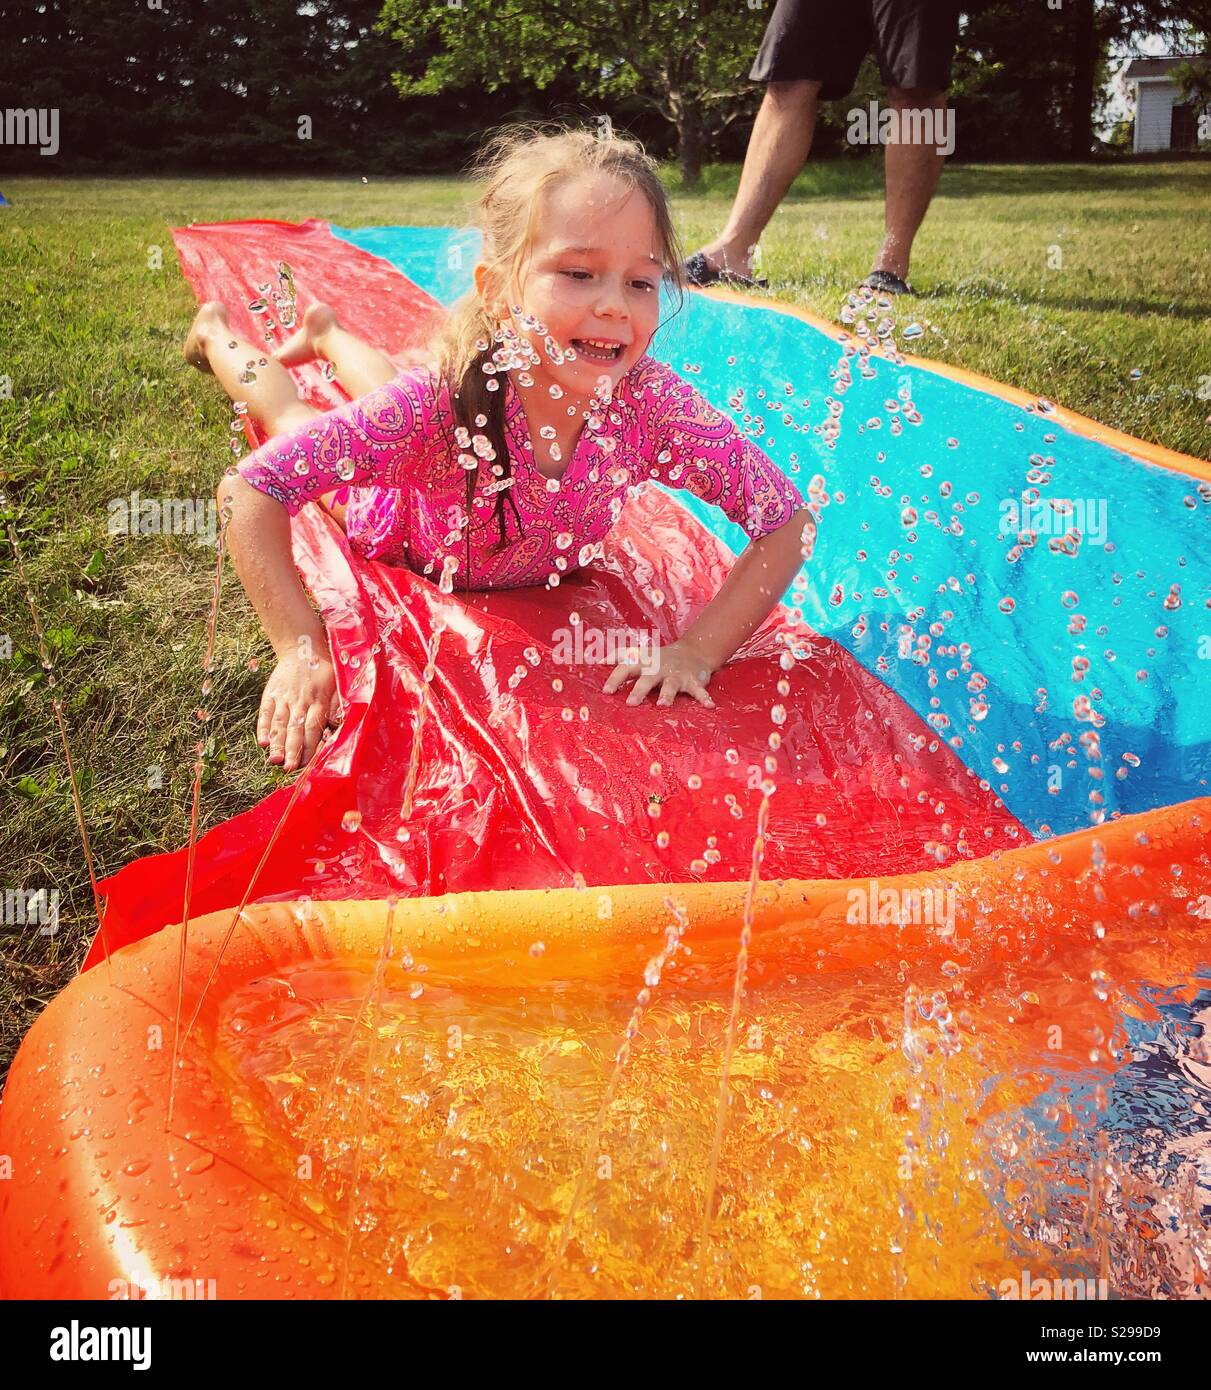 6 ans, fille, glissant sur l'eau en plastique à l'extérieur jouets glisser sprinkleur Banque D'Images